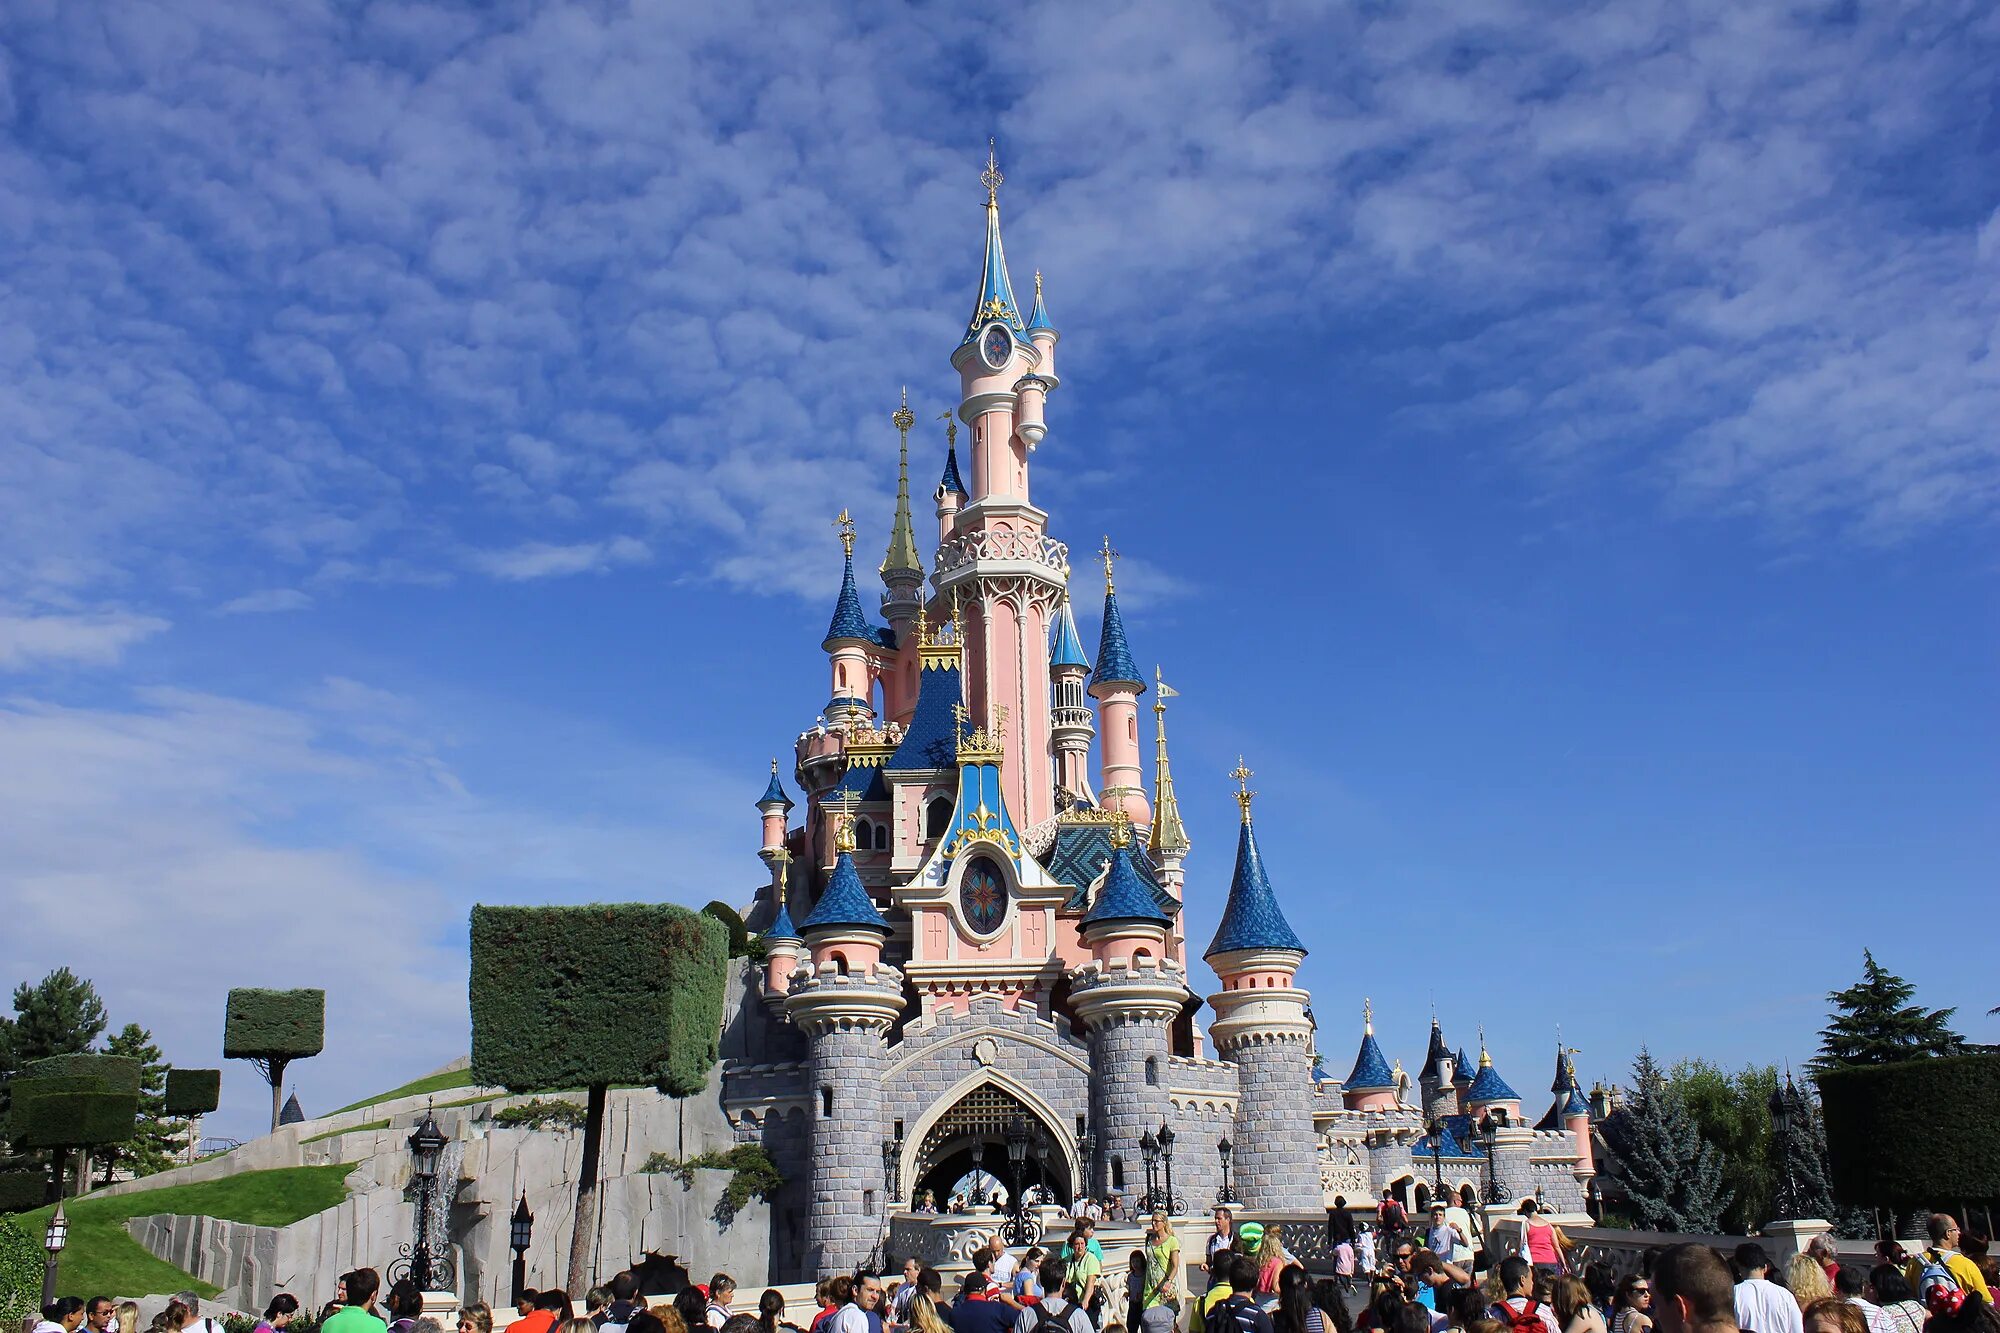 Первый диснейленд. Диснейленд Париж Disneyland Paris. Парижский Диснейленд замок спящей красавицы. Парк Уолт Дисней в Париже. Диснейленд Париж Диснейленд парк.